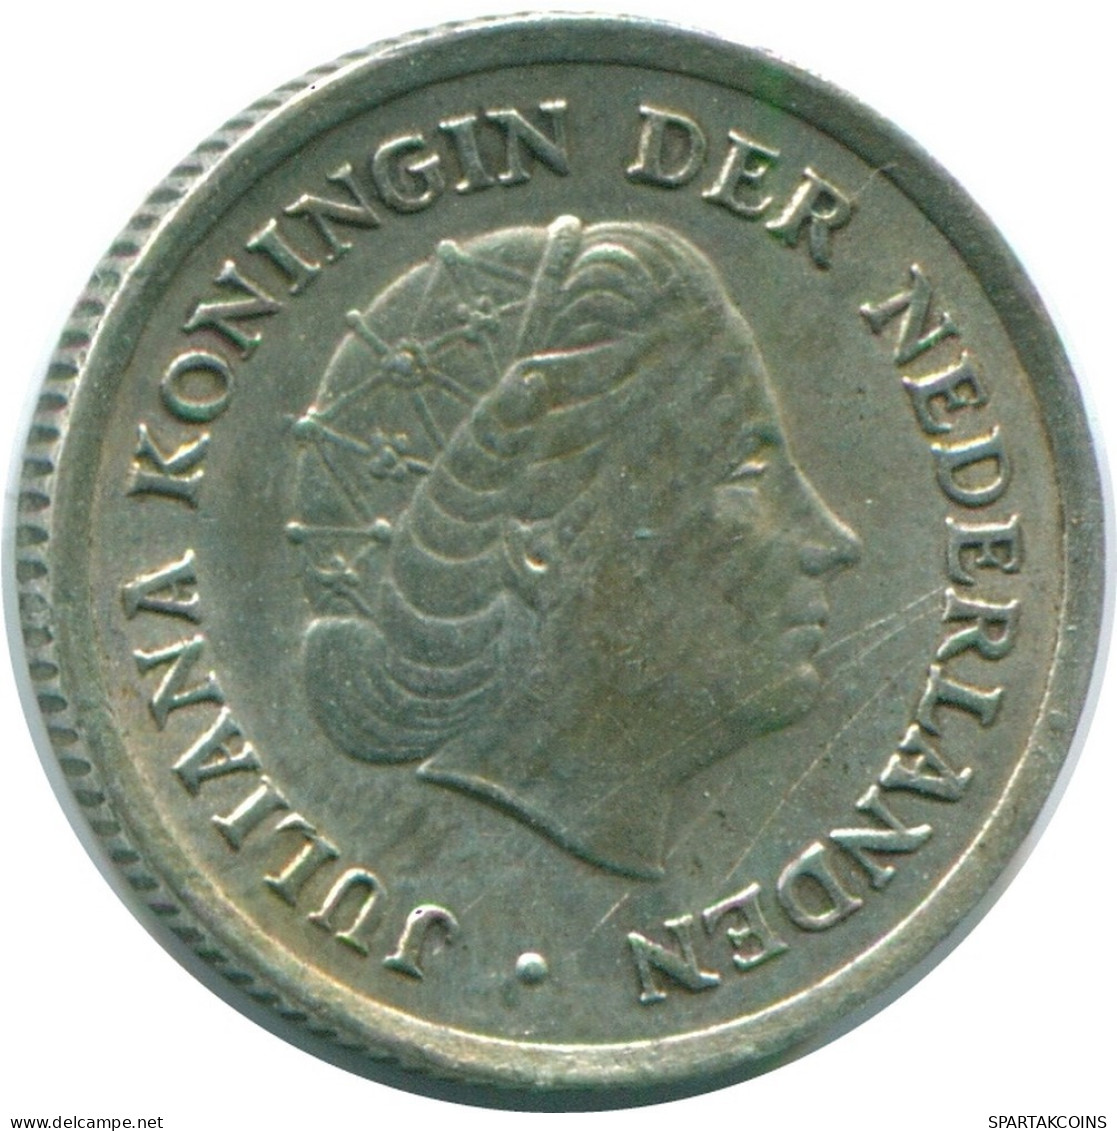 1/10 GULDEN 1966 NIEDERLÄNDISCHE ANTILLEN SILBER Koloniale Münze #NL12768.3.D.A - Antilles Néerlandaises